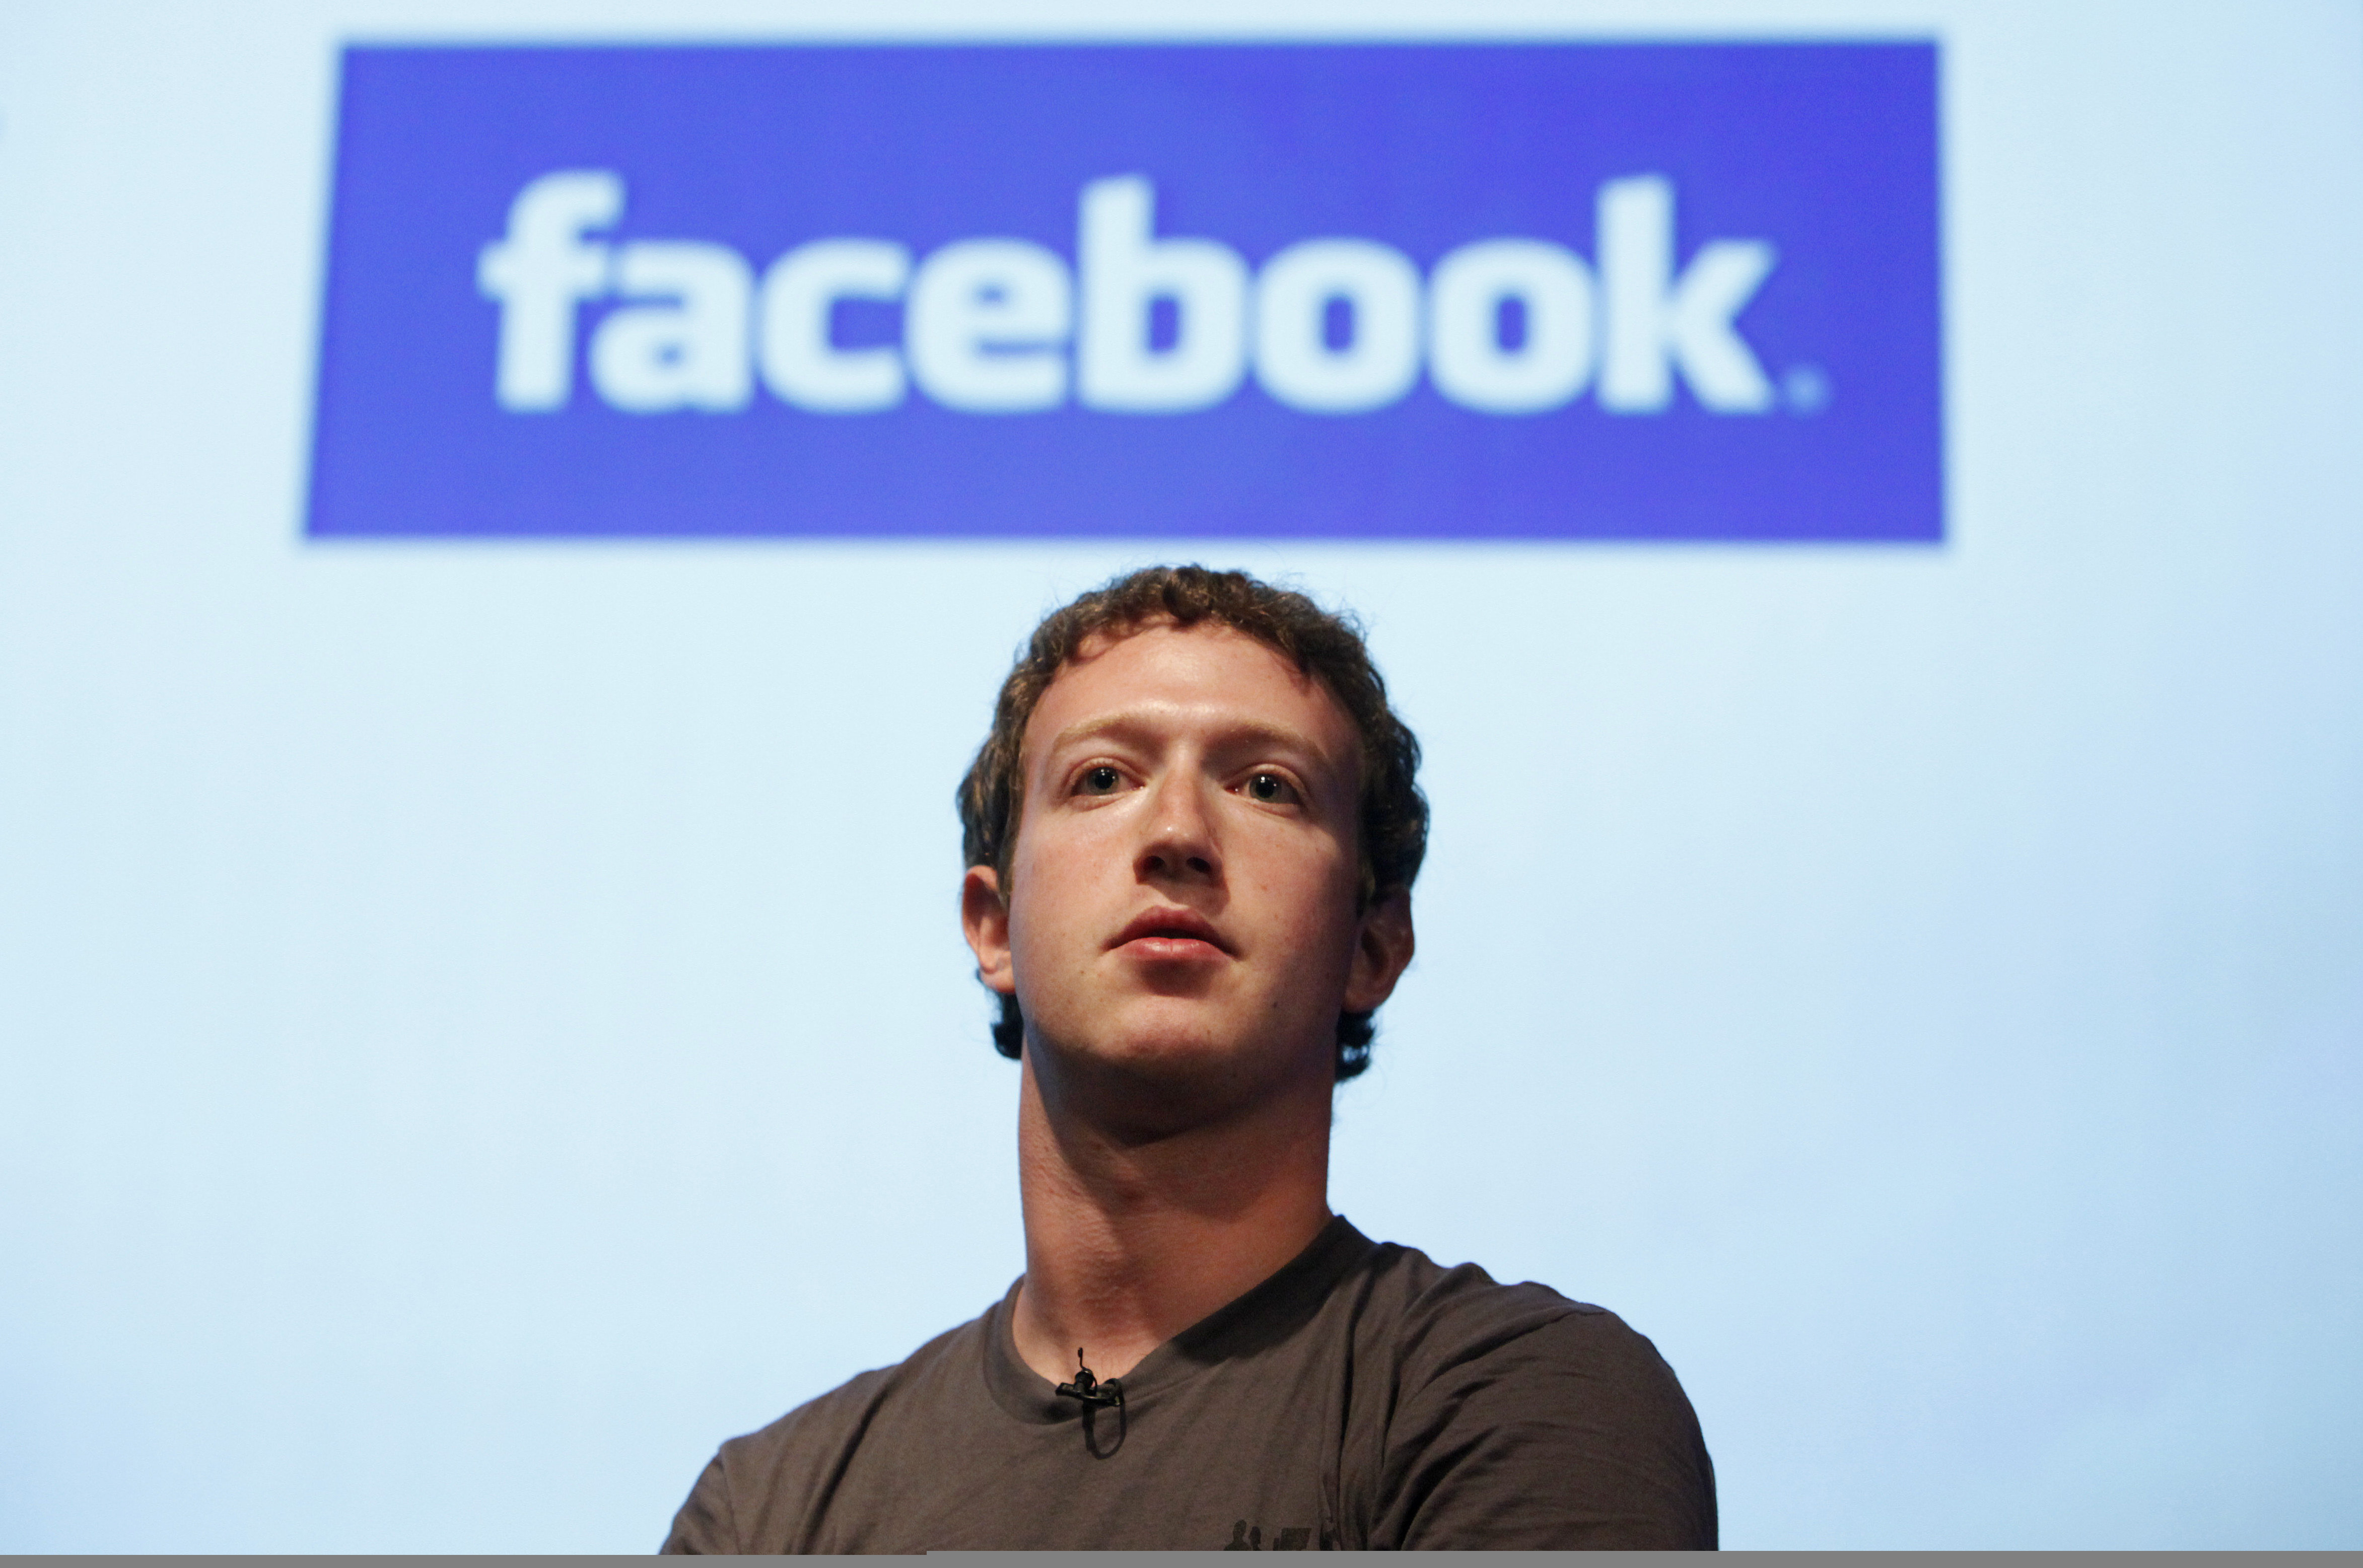 صورة رجال دين: نصف ركعة لوهّابي تفوق الـ ٤٥ مليار التي تبرّع بها مؤسس فيسبوك